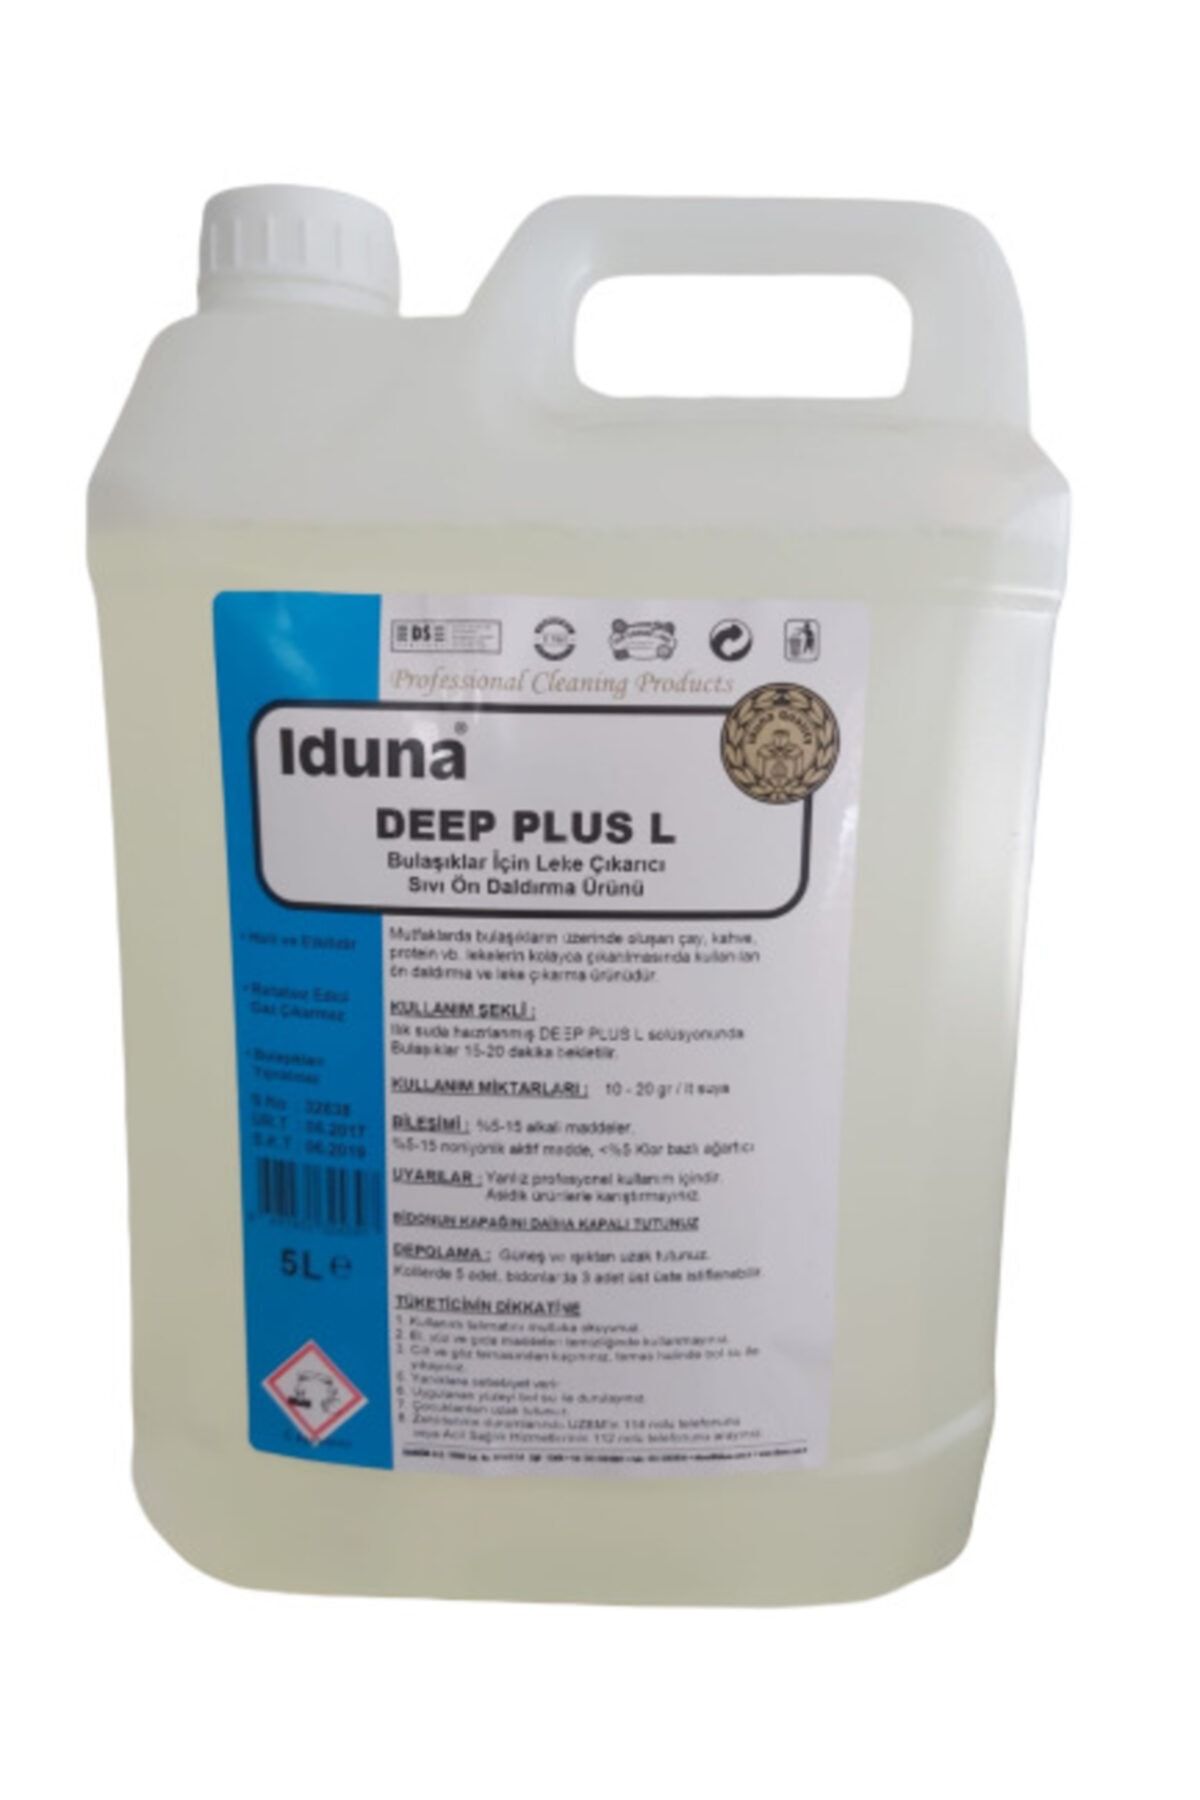 Iduna Deep Plus L Bulaşıklar Için Leke Çıkarıcı ve Sıvı Ön Daldırma Ürünü 5 Litre